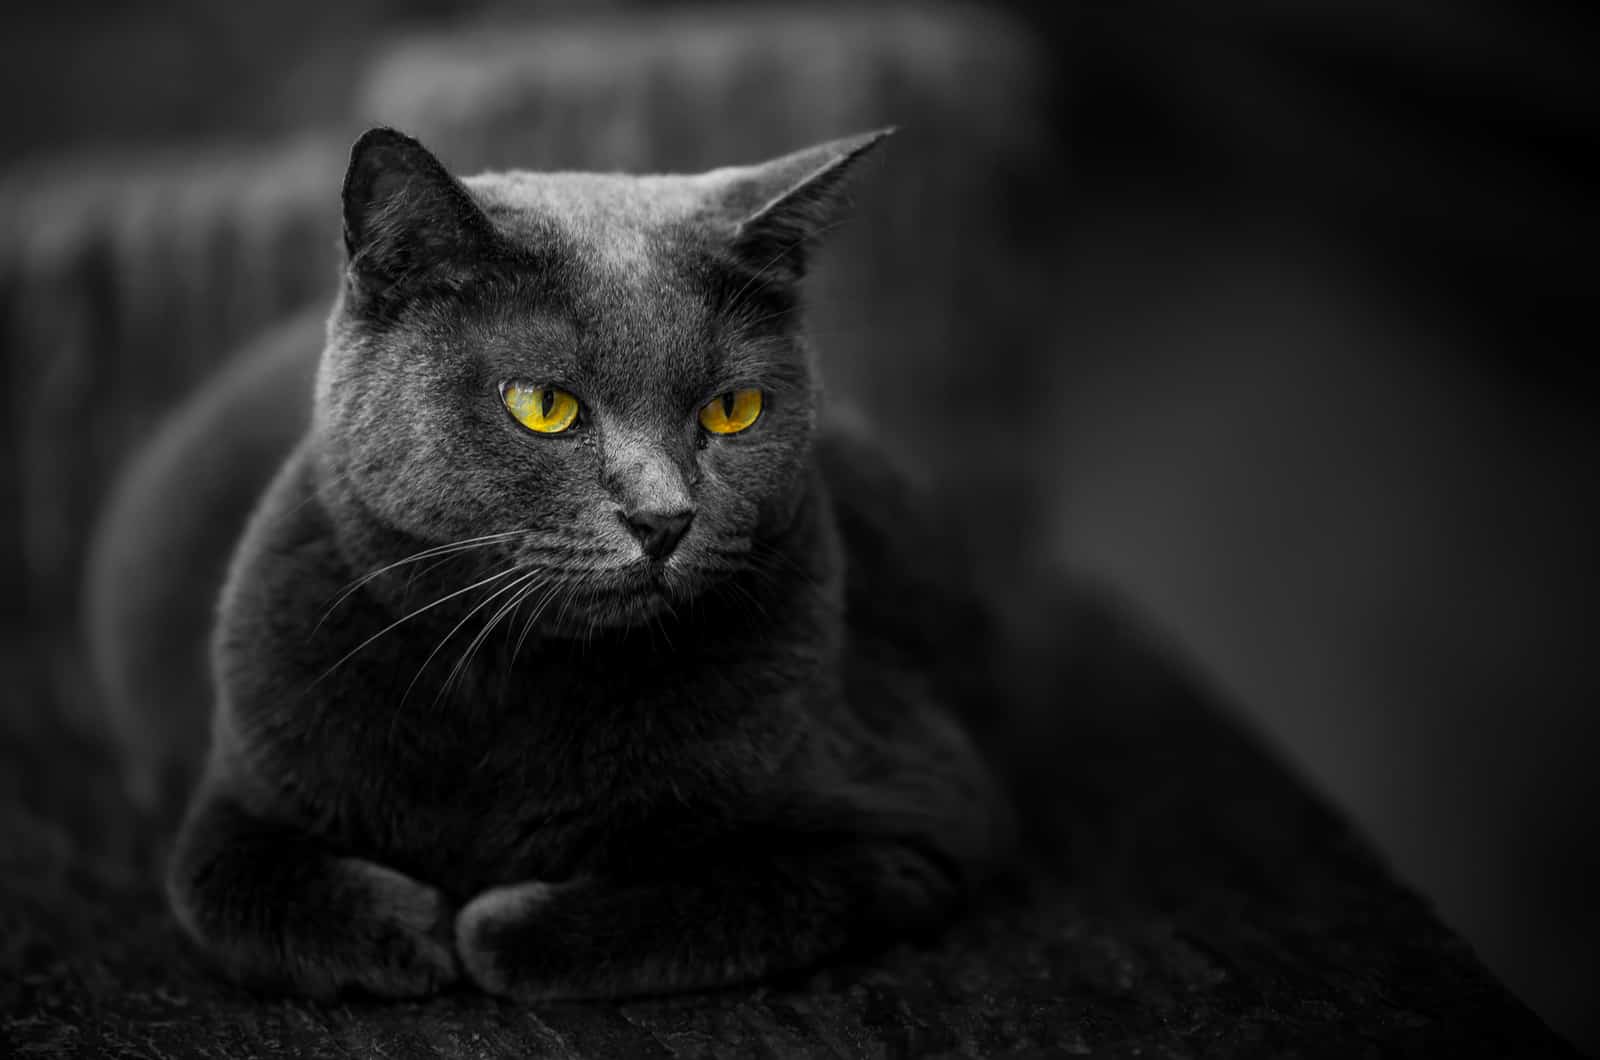 zwarte kat poseert en kijkt weg